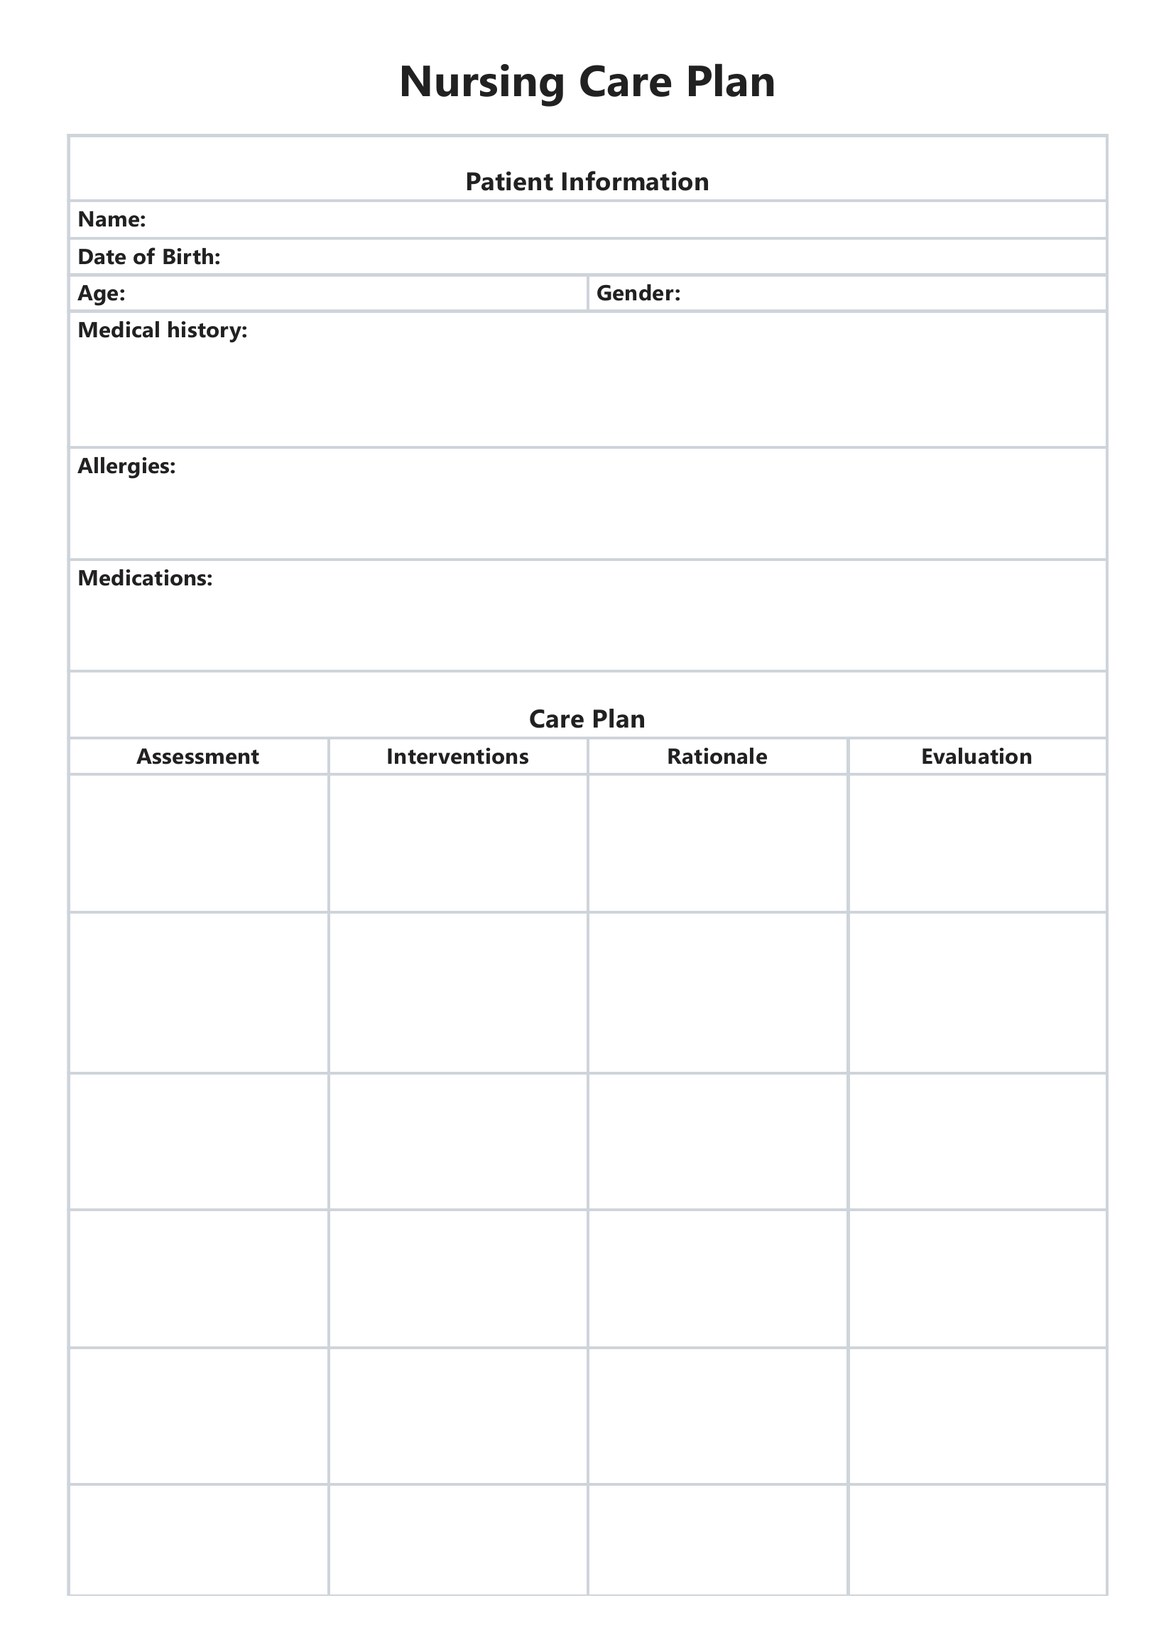 Nursing Care Plan PDF Example